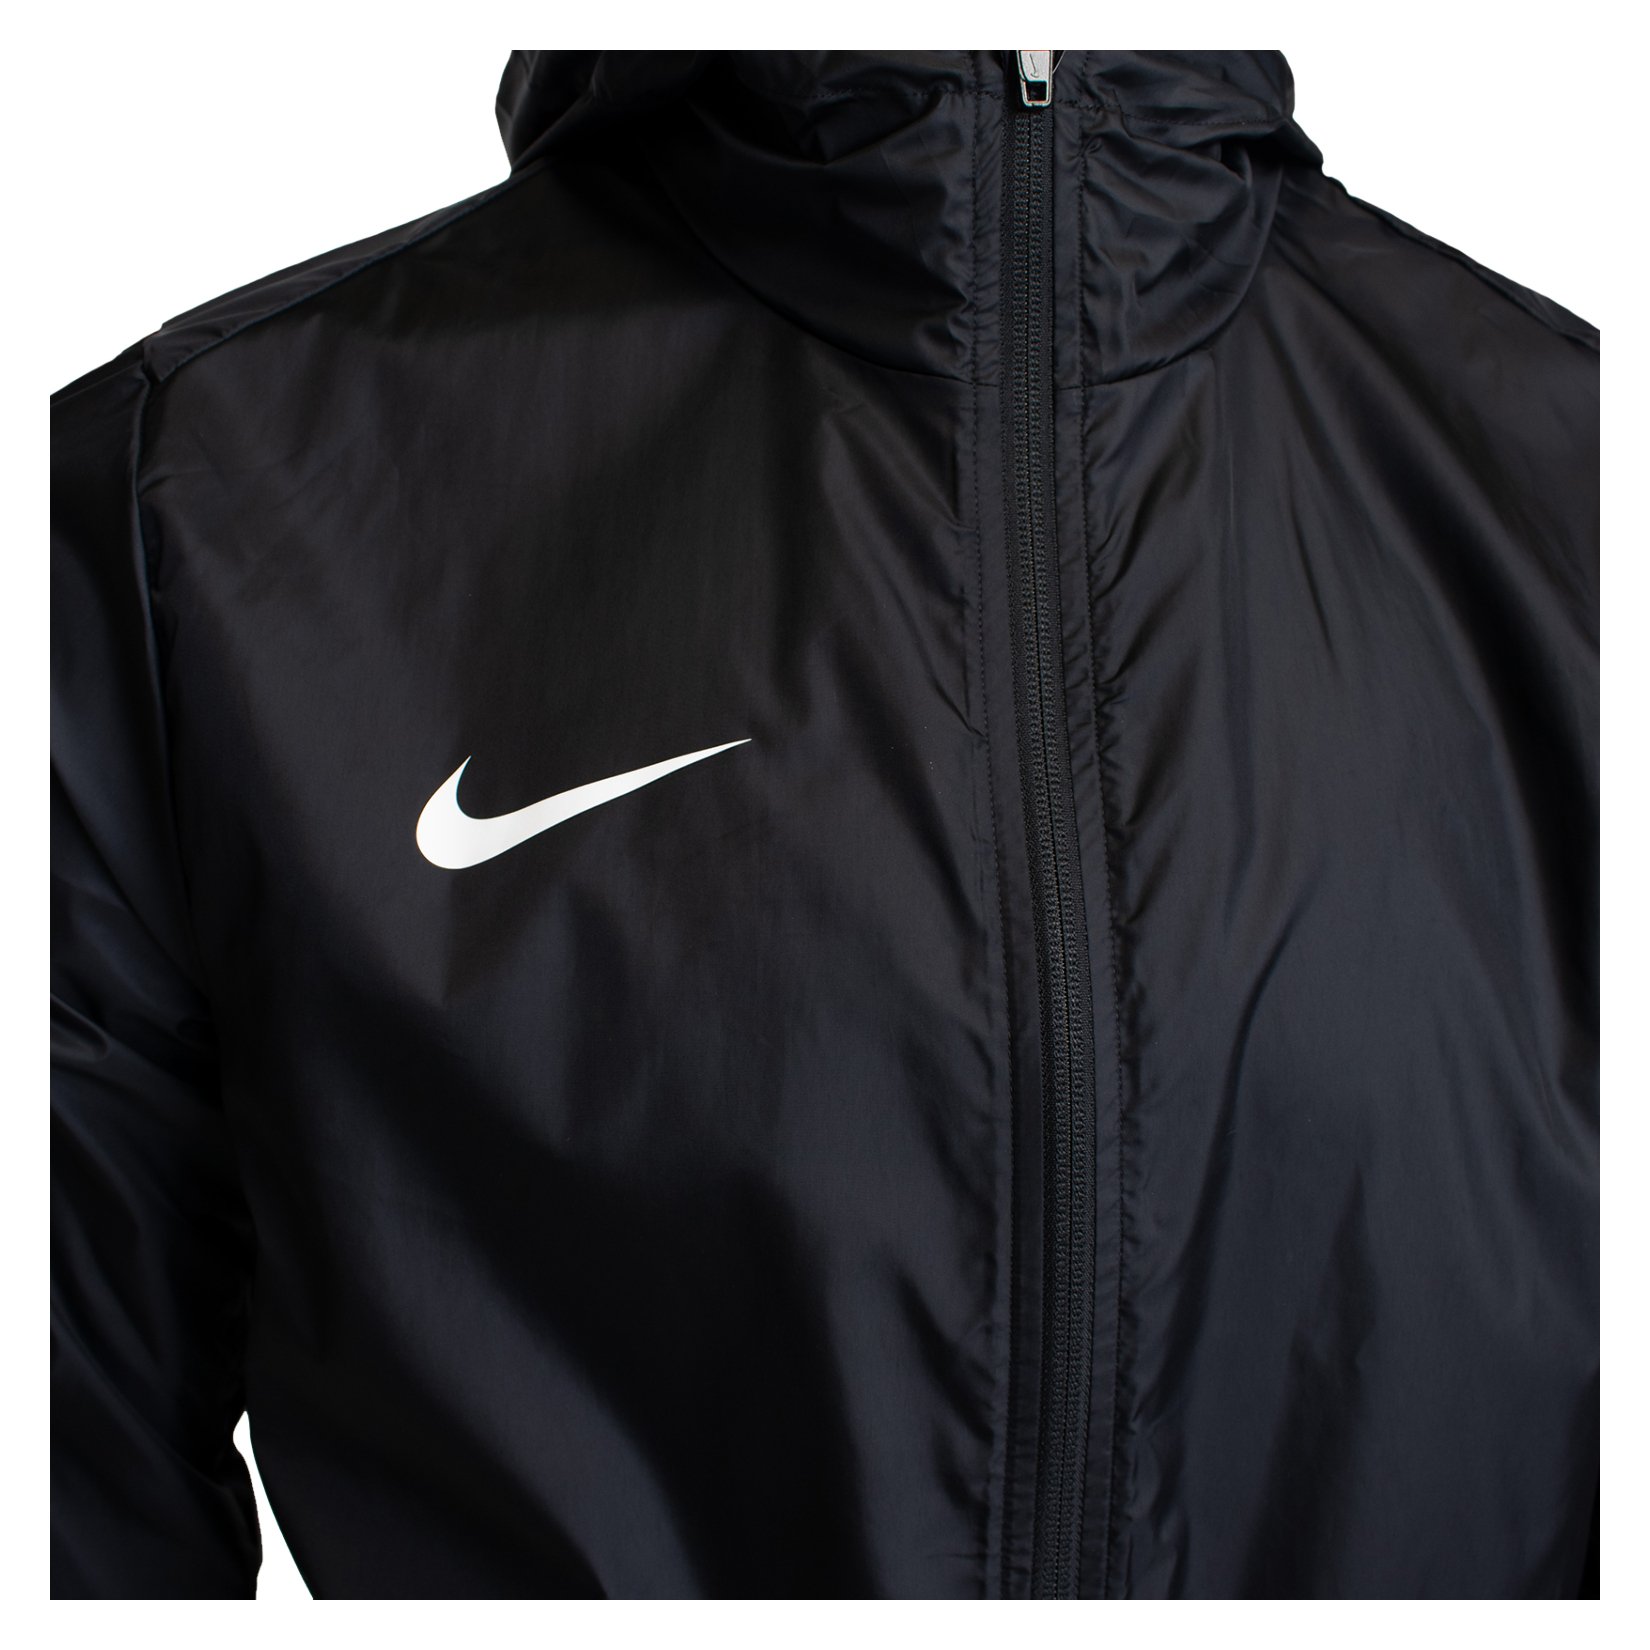 Nike Academy Pro 24 Storm-Fit Rain Jacket